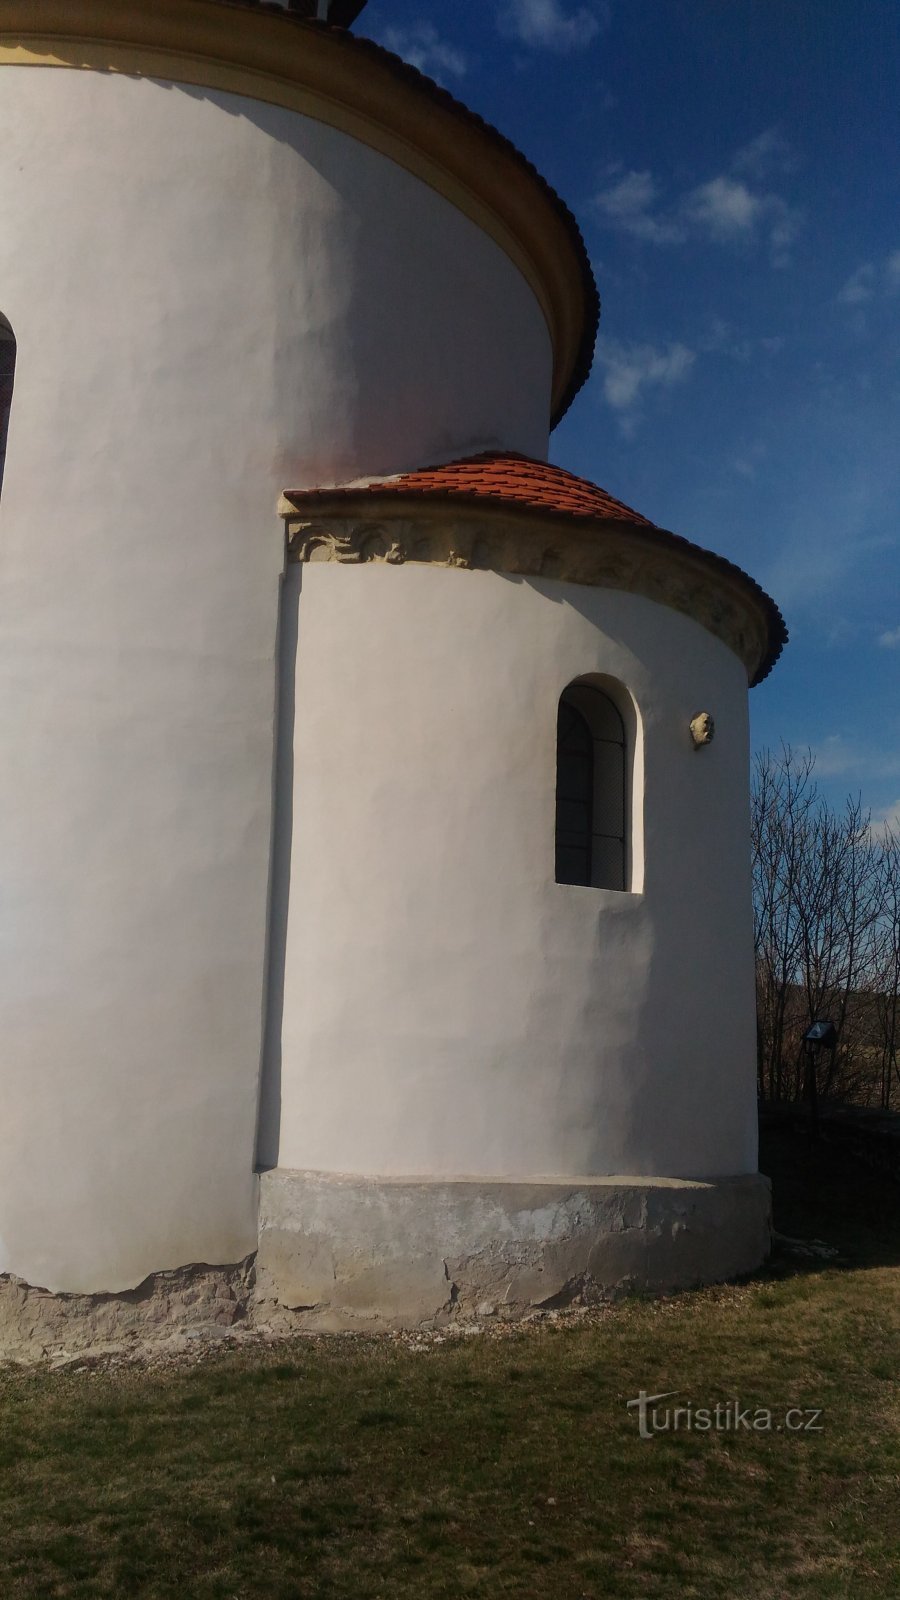 Đầu của người Thổ Nhĩ Kỳ trên một nhà thờ nhỏ ở Želkovice.